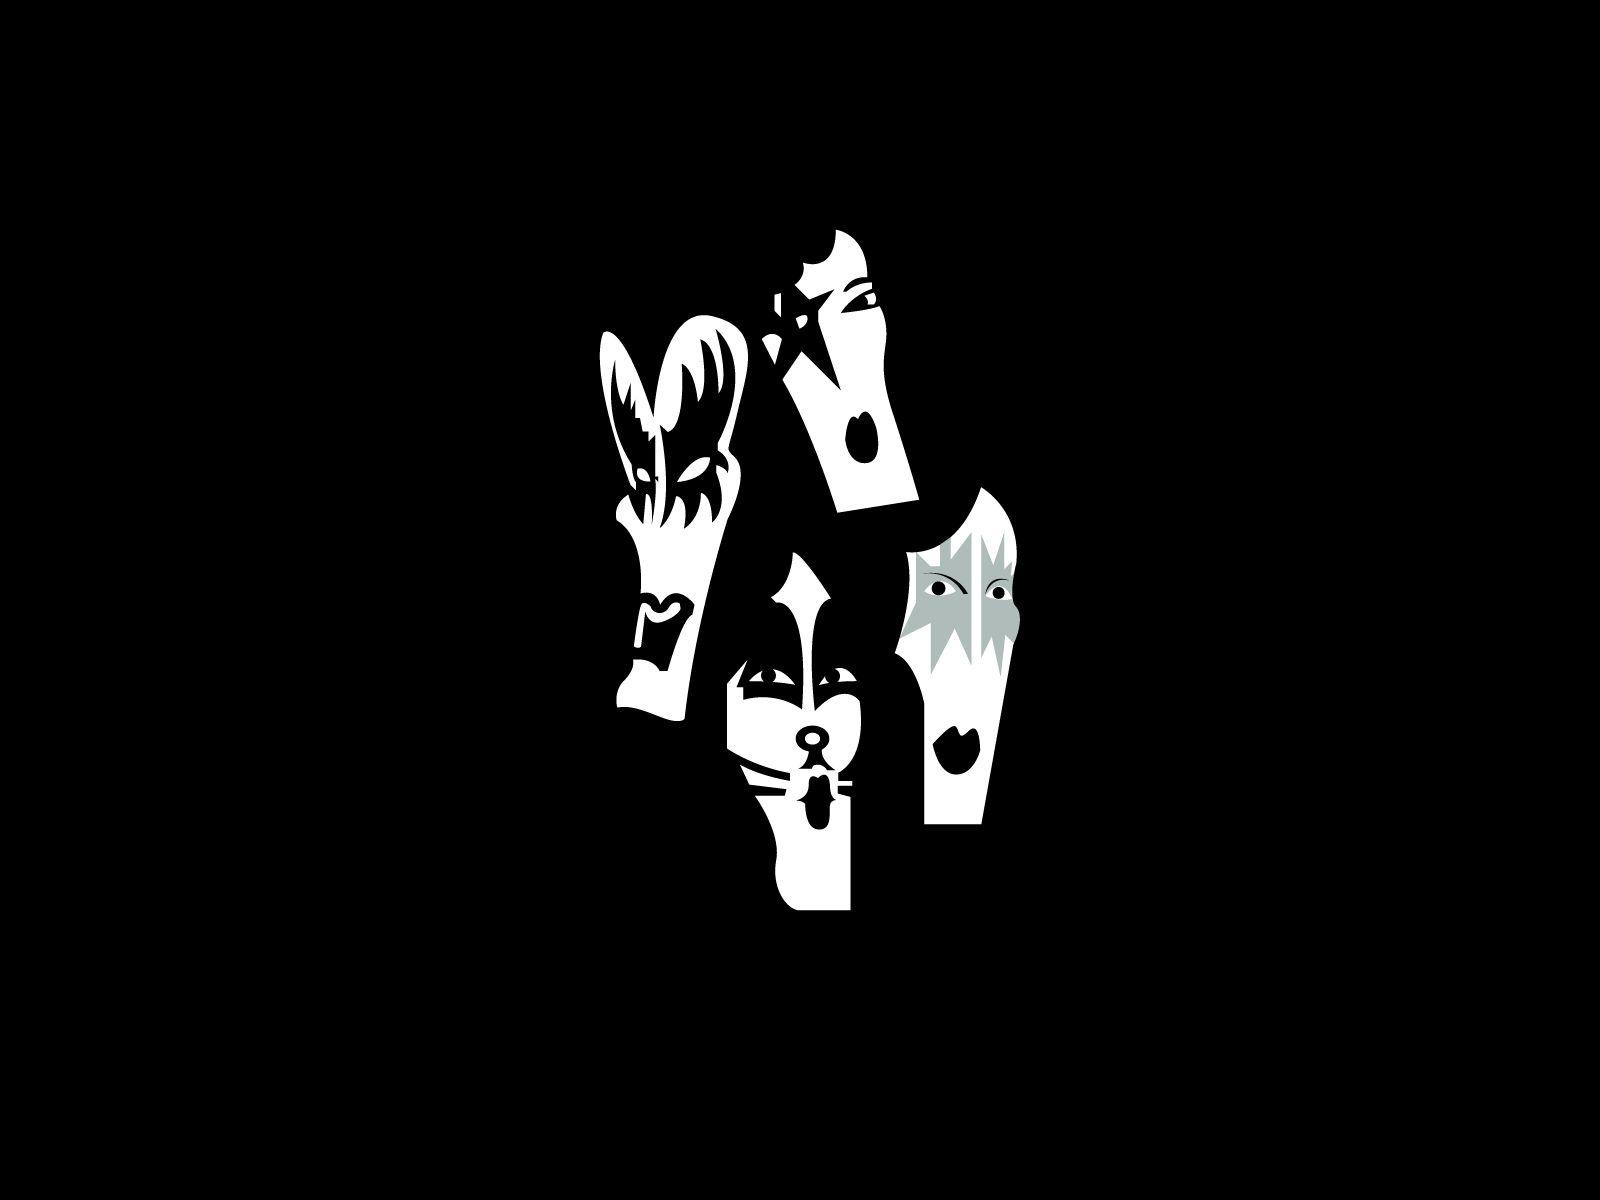 Kiss band logo and wallpaper. Band logos band logos, metal